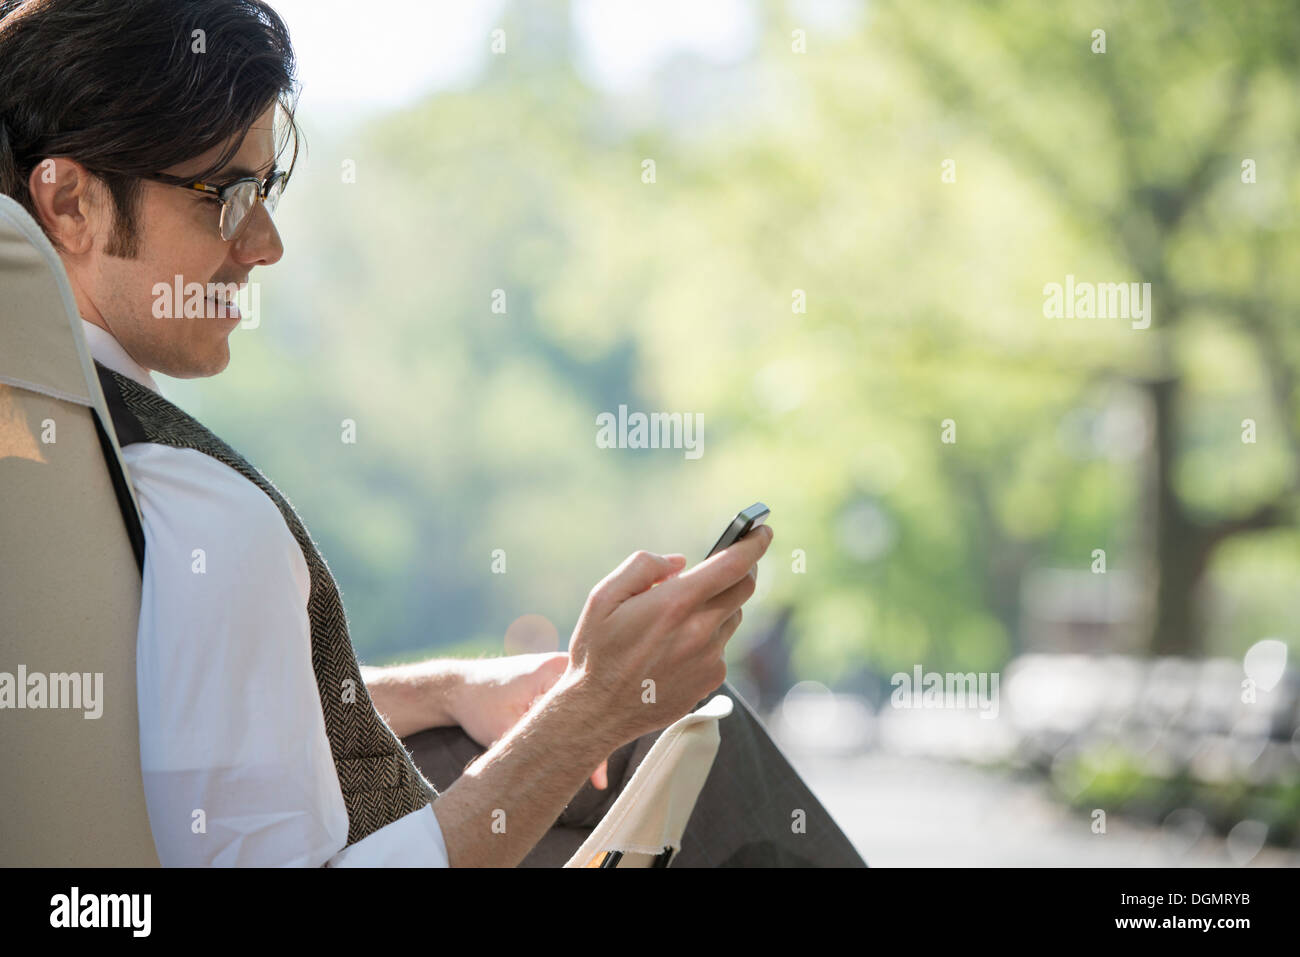 Leben in der Stadt. Ein Mann sitzt in einer Leinwand Campingstuhl in den Park, Blick auf sein Handy. Stockfoto